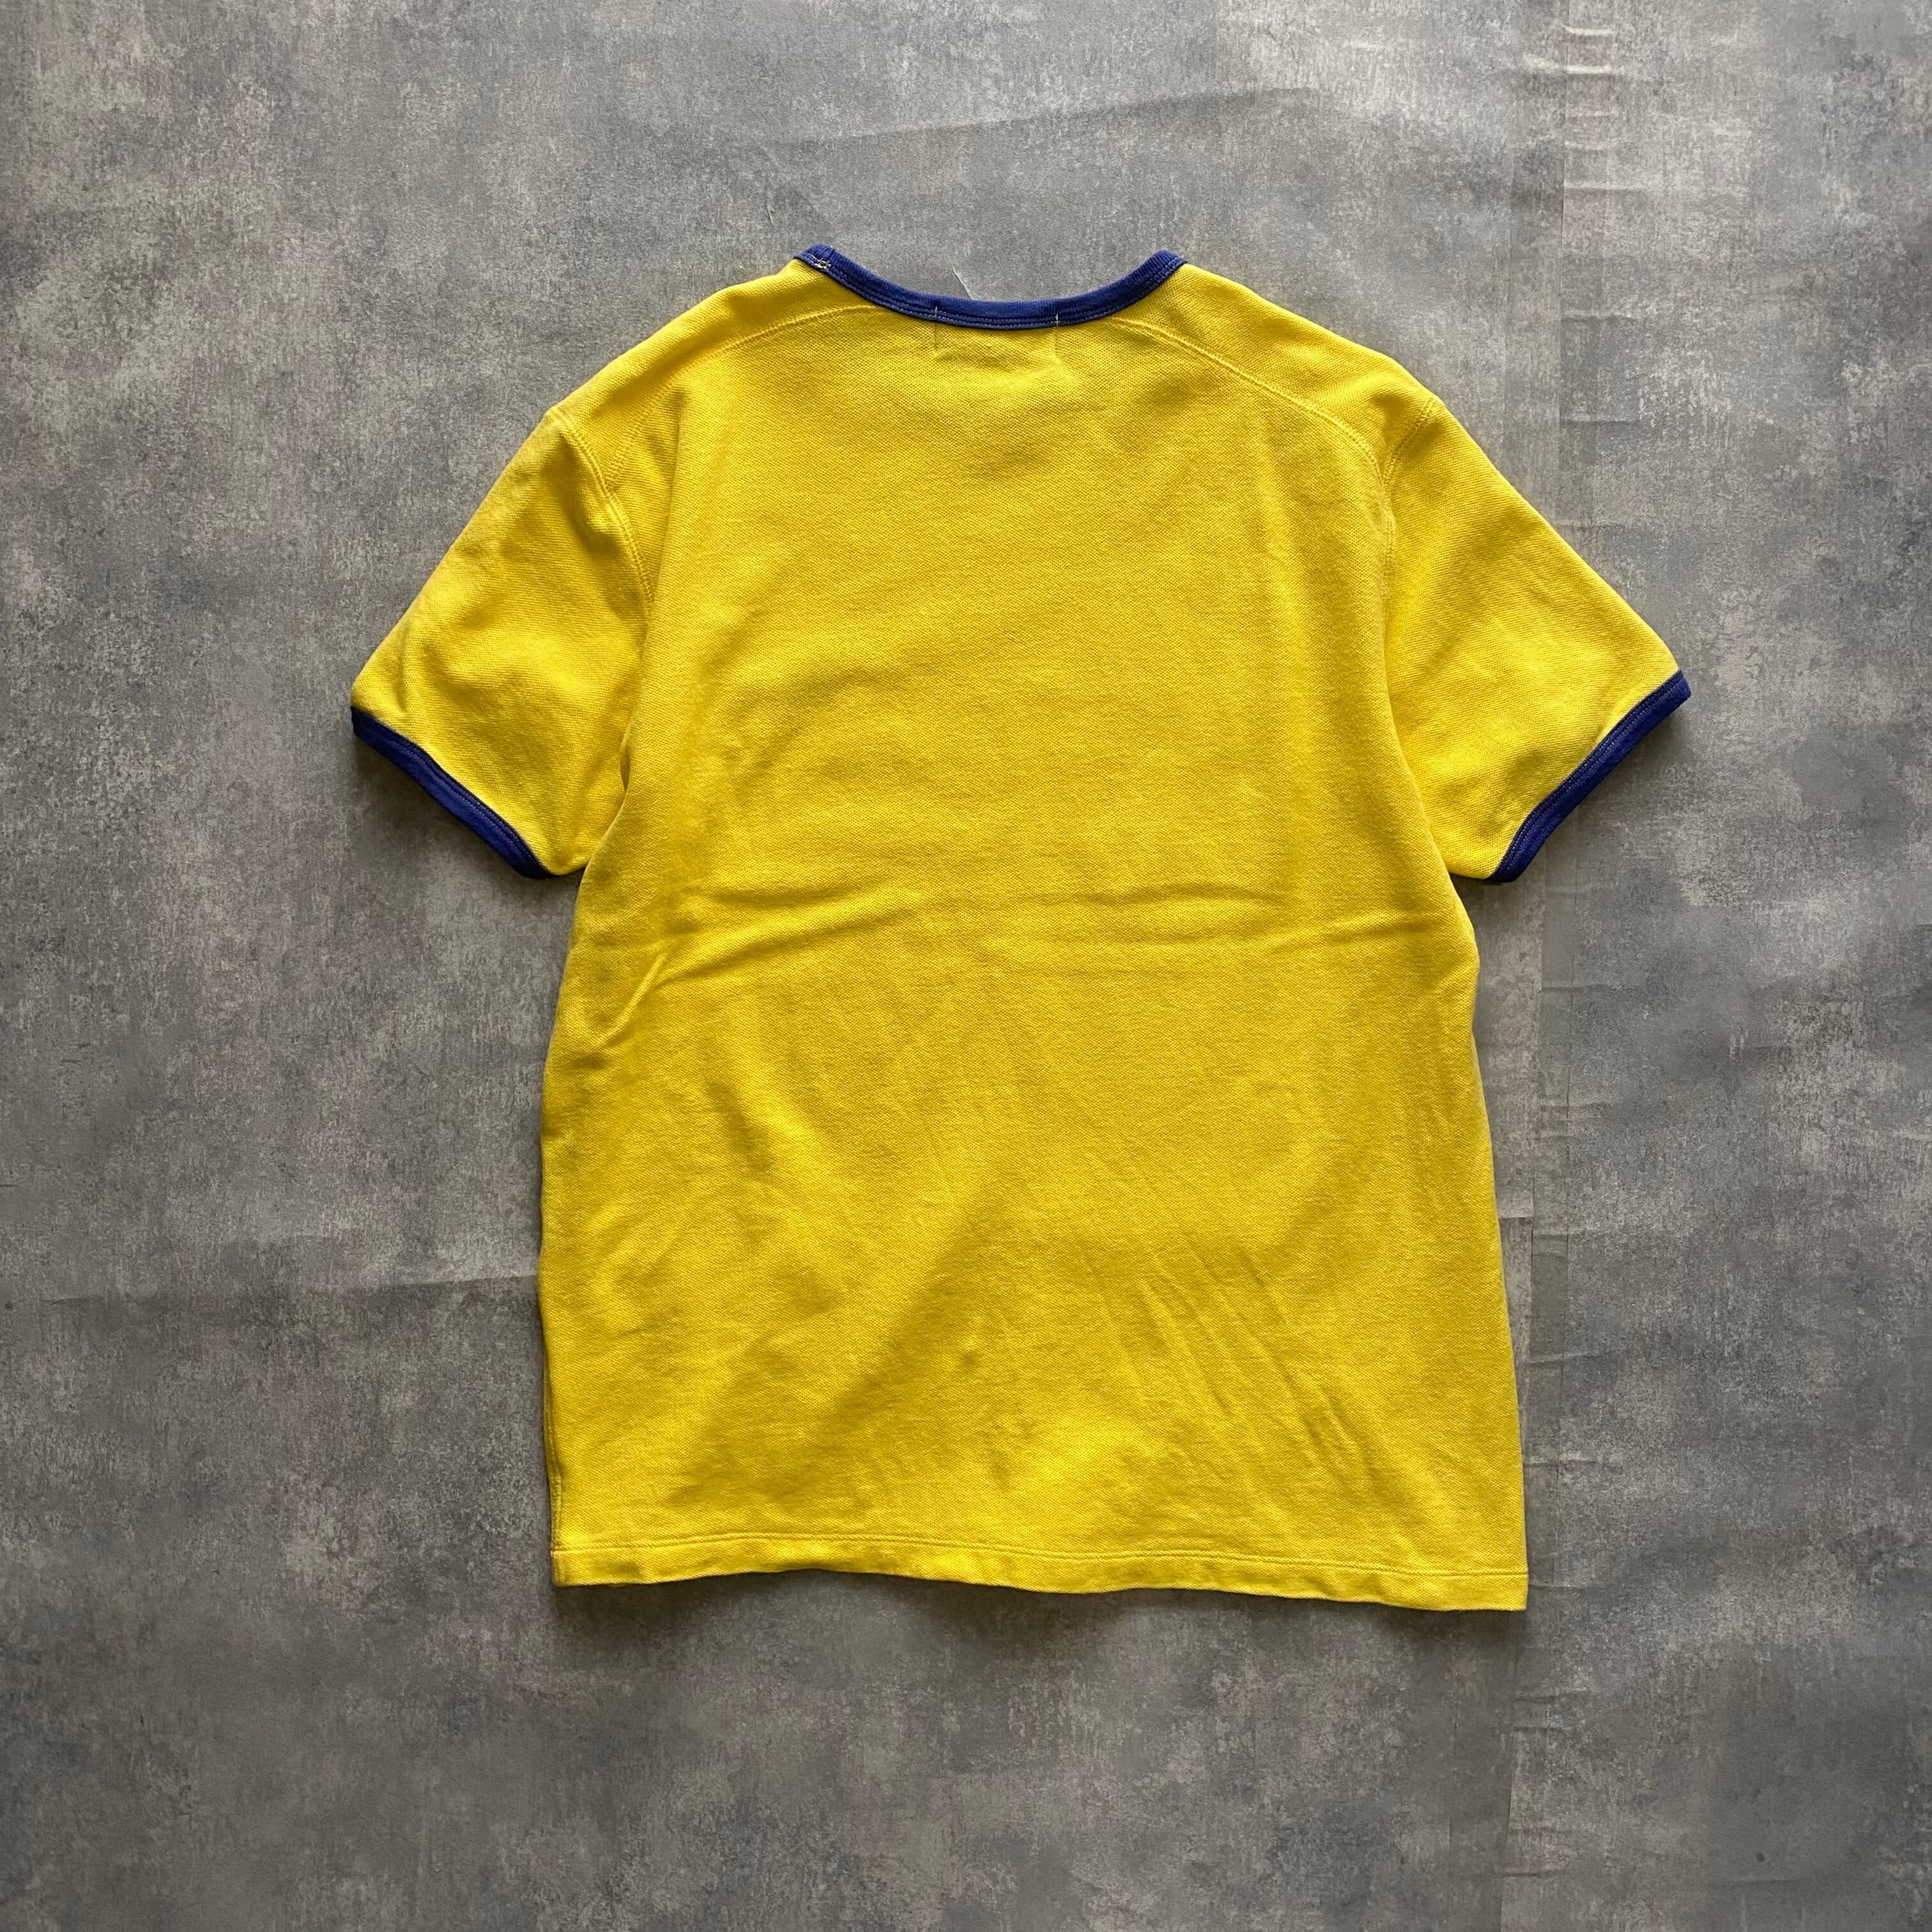 希少 90s ポロバイラルフローレン リンガーTシャツ ポニーロゴ刺繍 XL